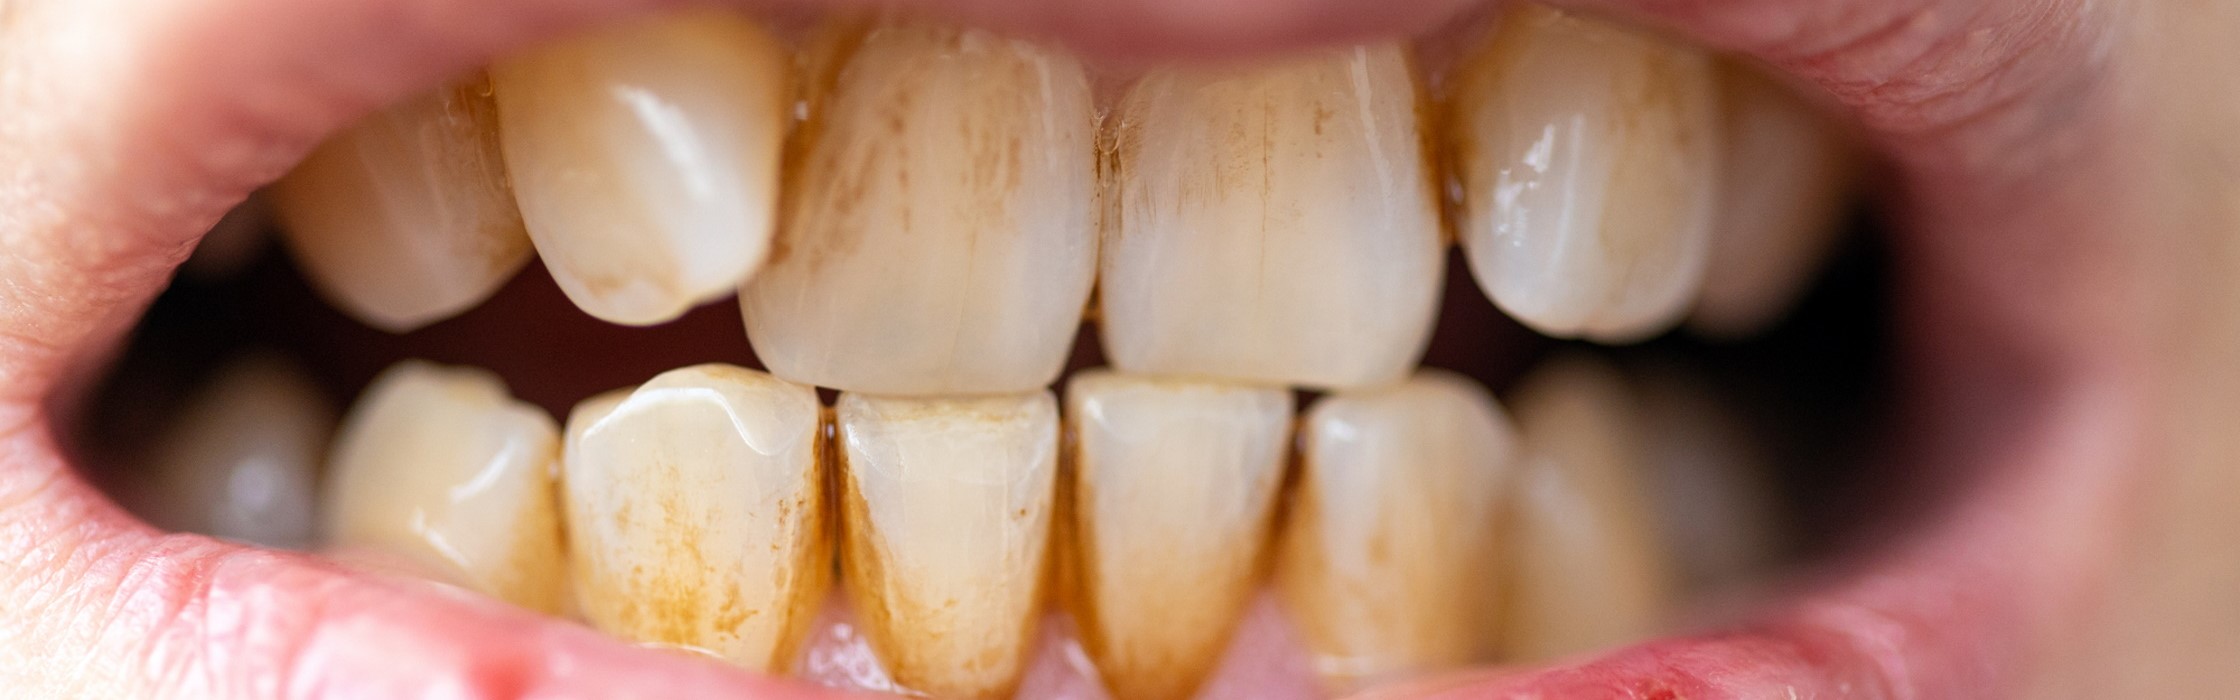 Plaque – so entfernen Sie den Biofilm auf Ihren Zähnen richtig